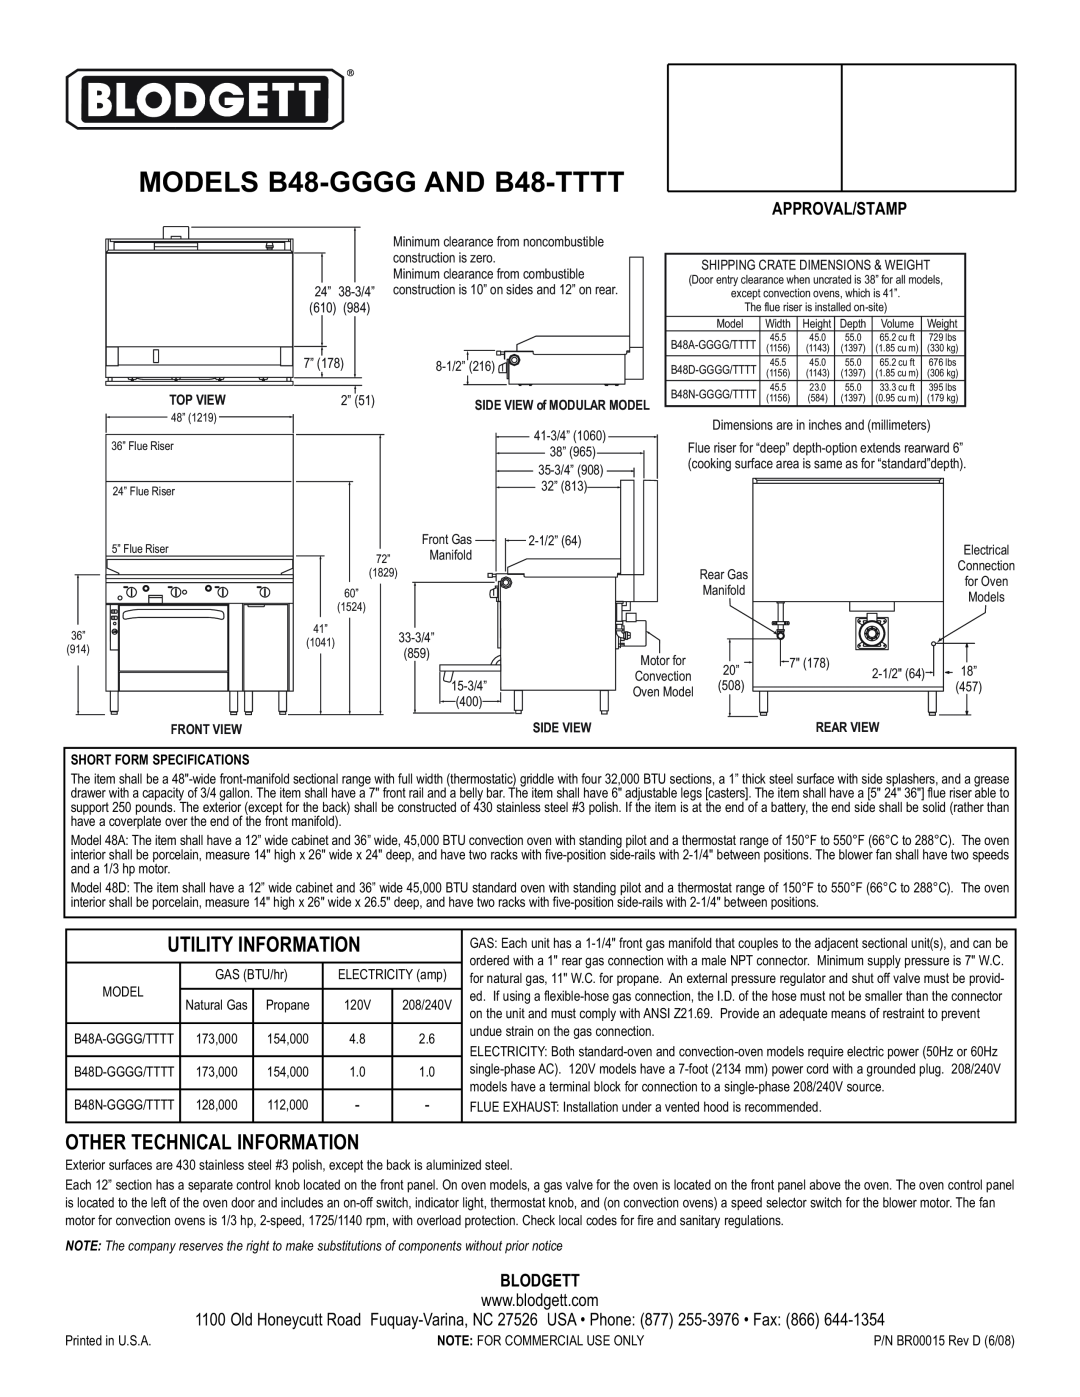 Blodgett B48--TTTT MODELS B48-GGGGAND B48-TTTT, Utility Information, Other Technical Information, Approval/Stamp, Blodgett 